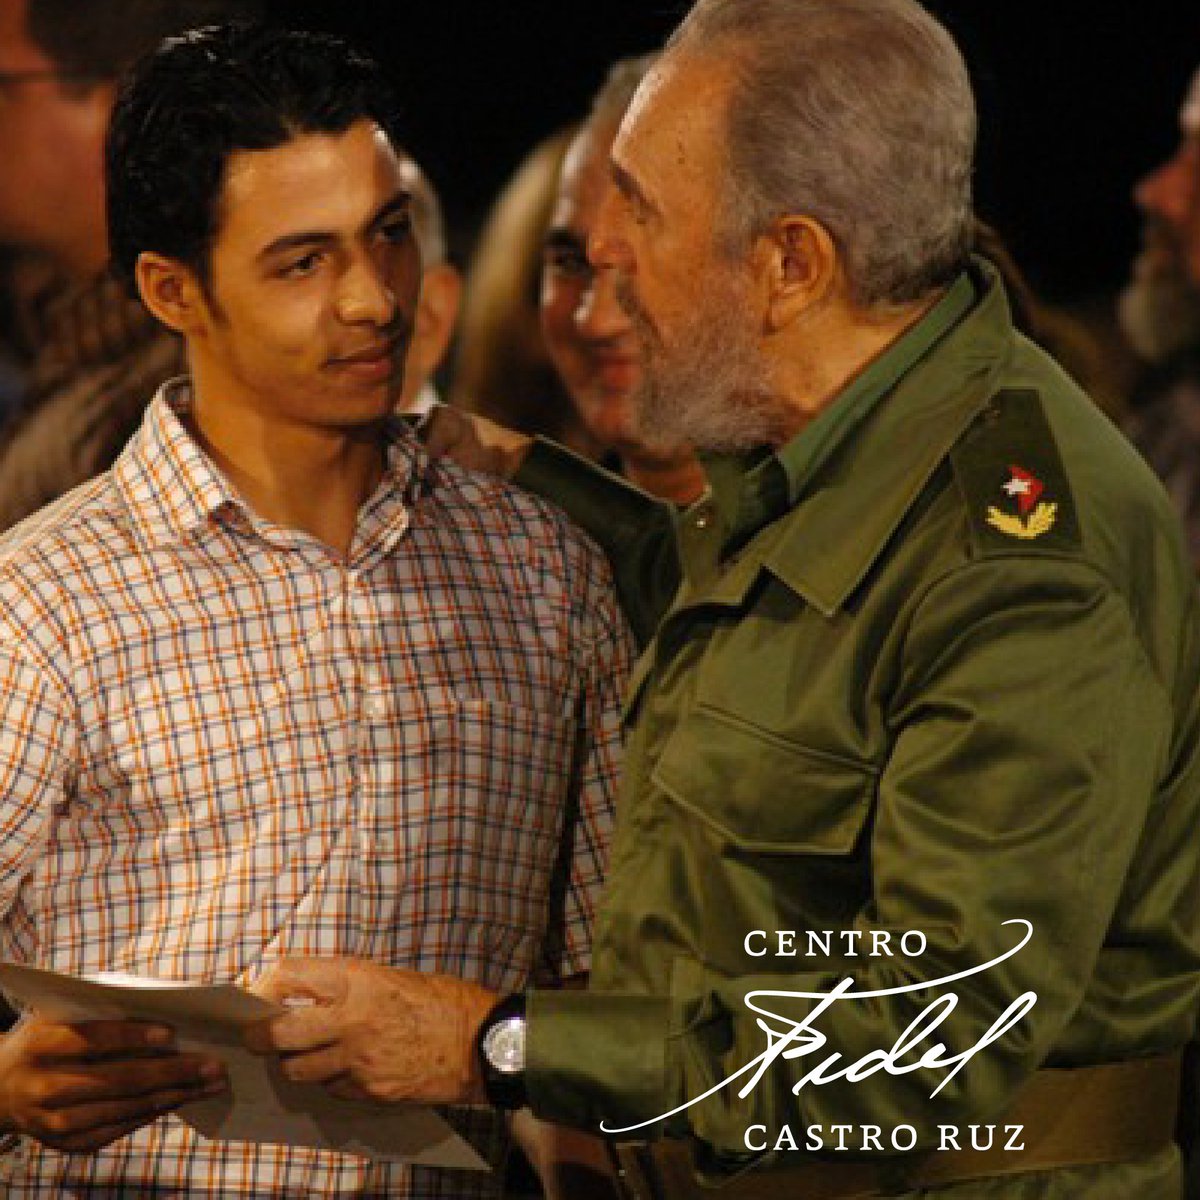 #Fidel:'Los #InstructoresDeArte llevarán a sus clases la riqueza cultural de nuestra nación a lo largo de su historia y prepararán a nuestros niños y adolescentes para los caminos de cultura y sabiduría que la Revolución les abrió'. #CubaVive #FidelVive #CubaEsCultura